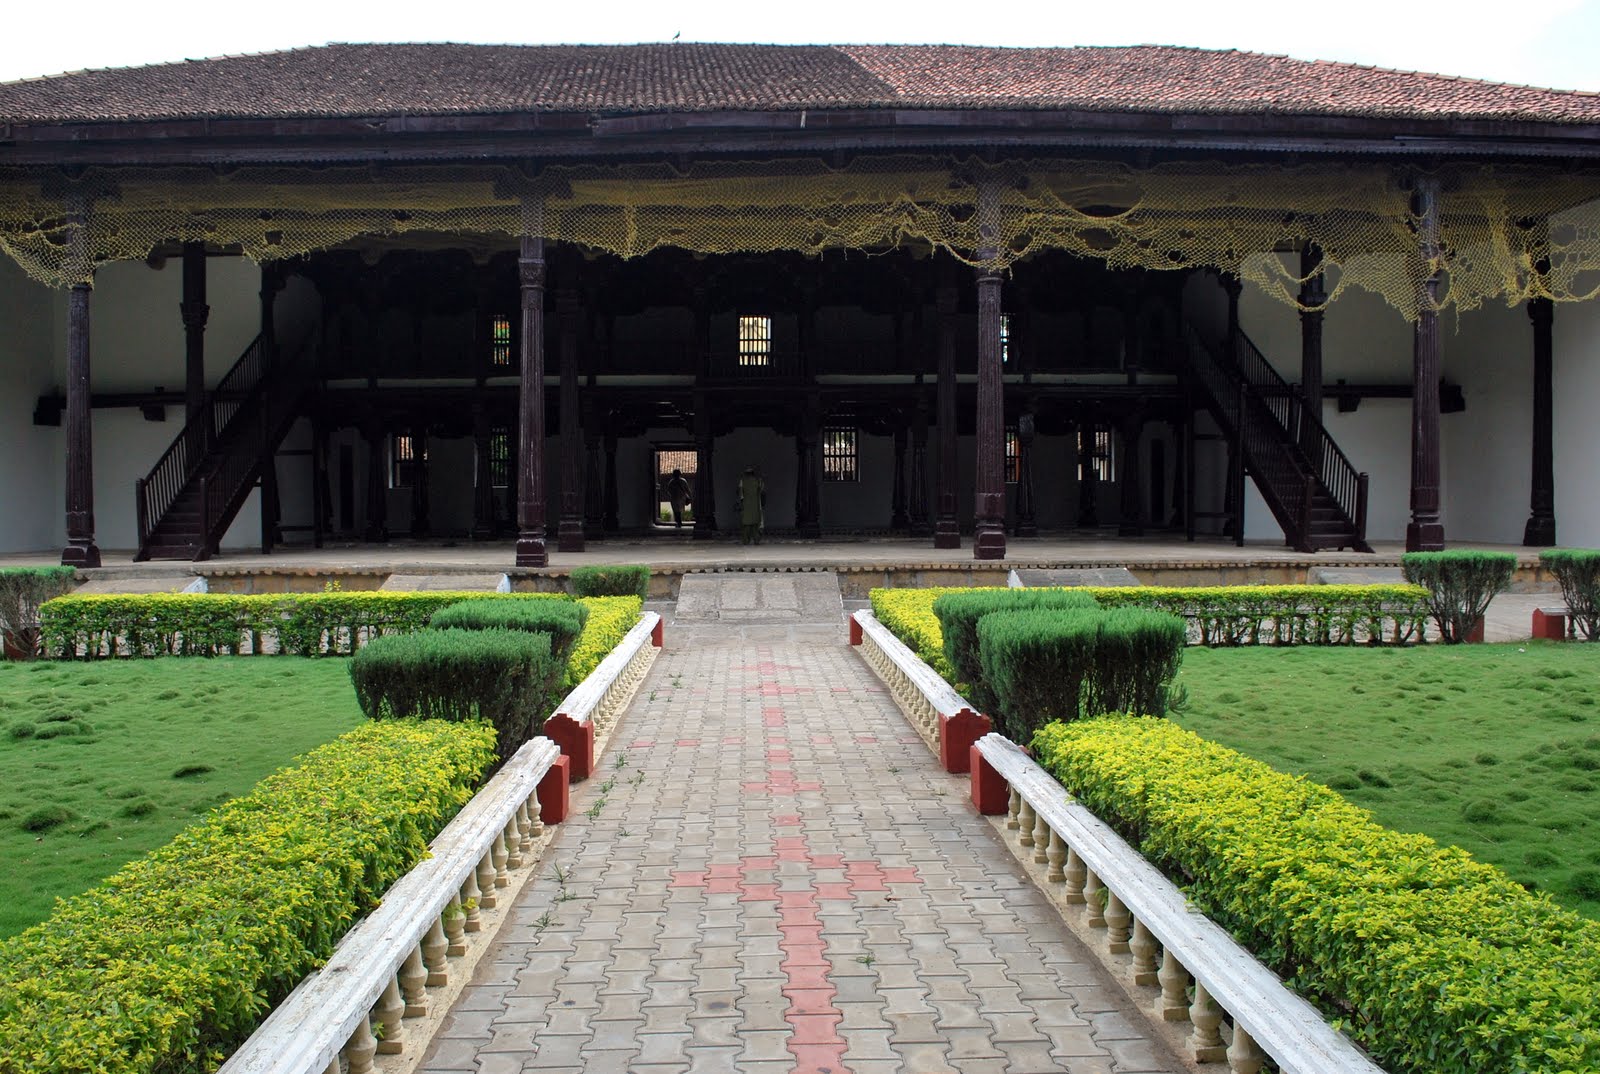 Shivappa Nayaka Palace